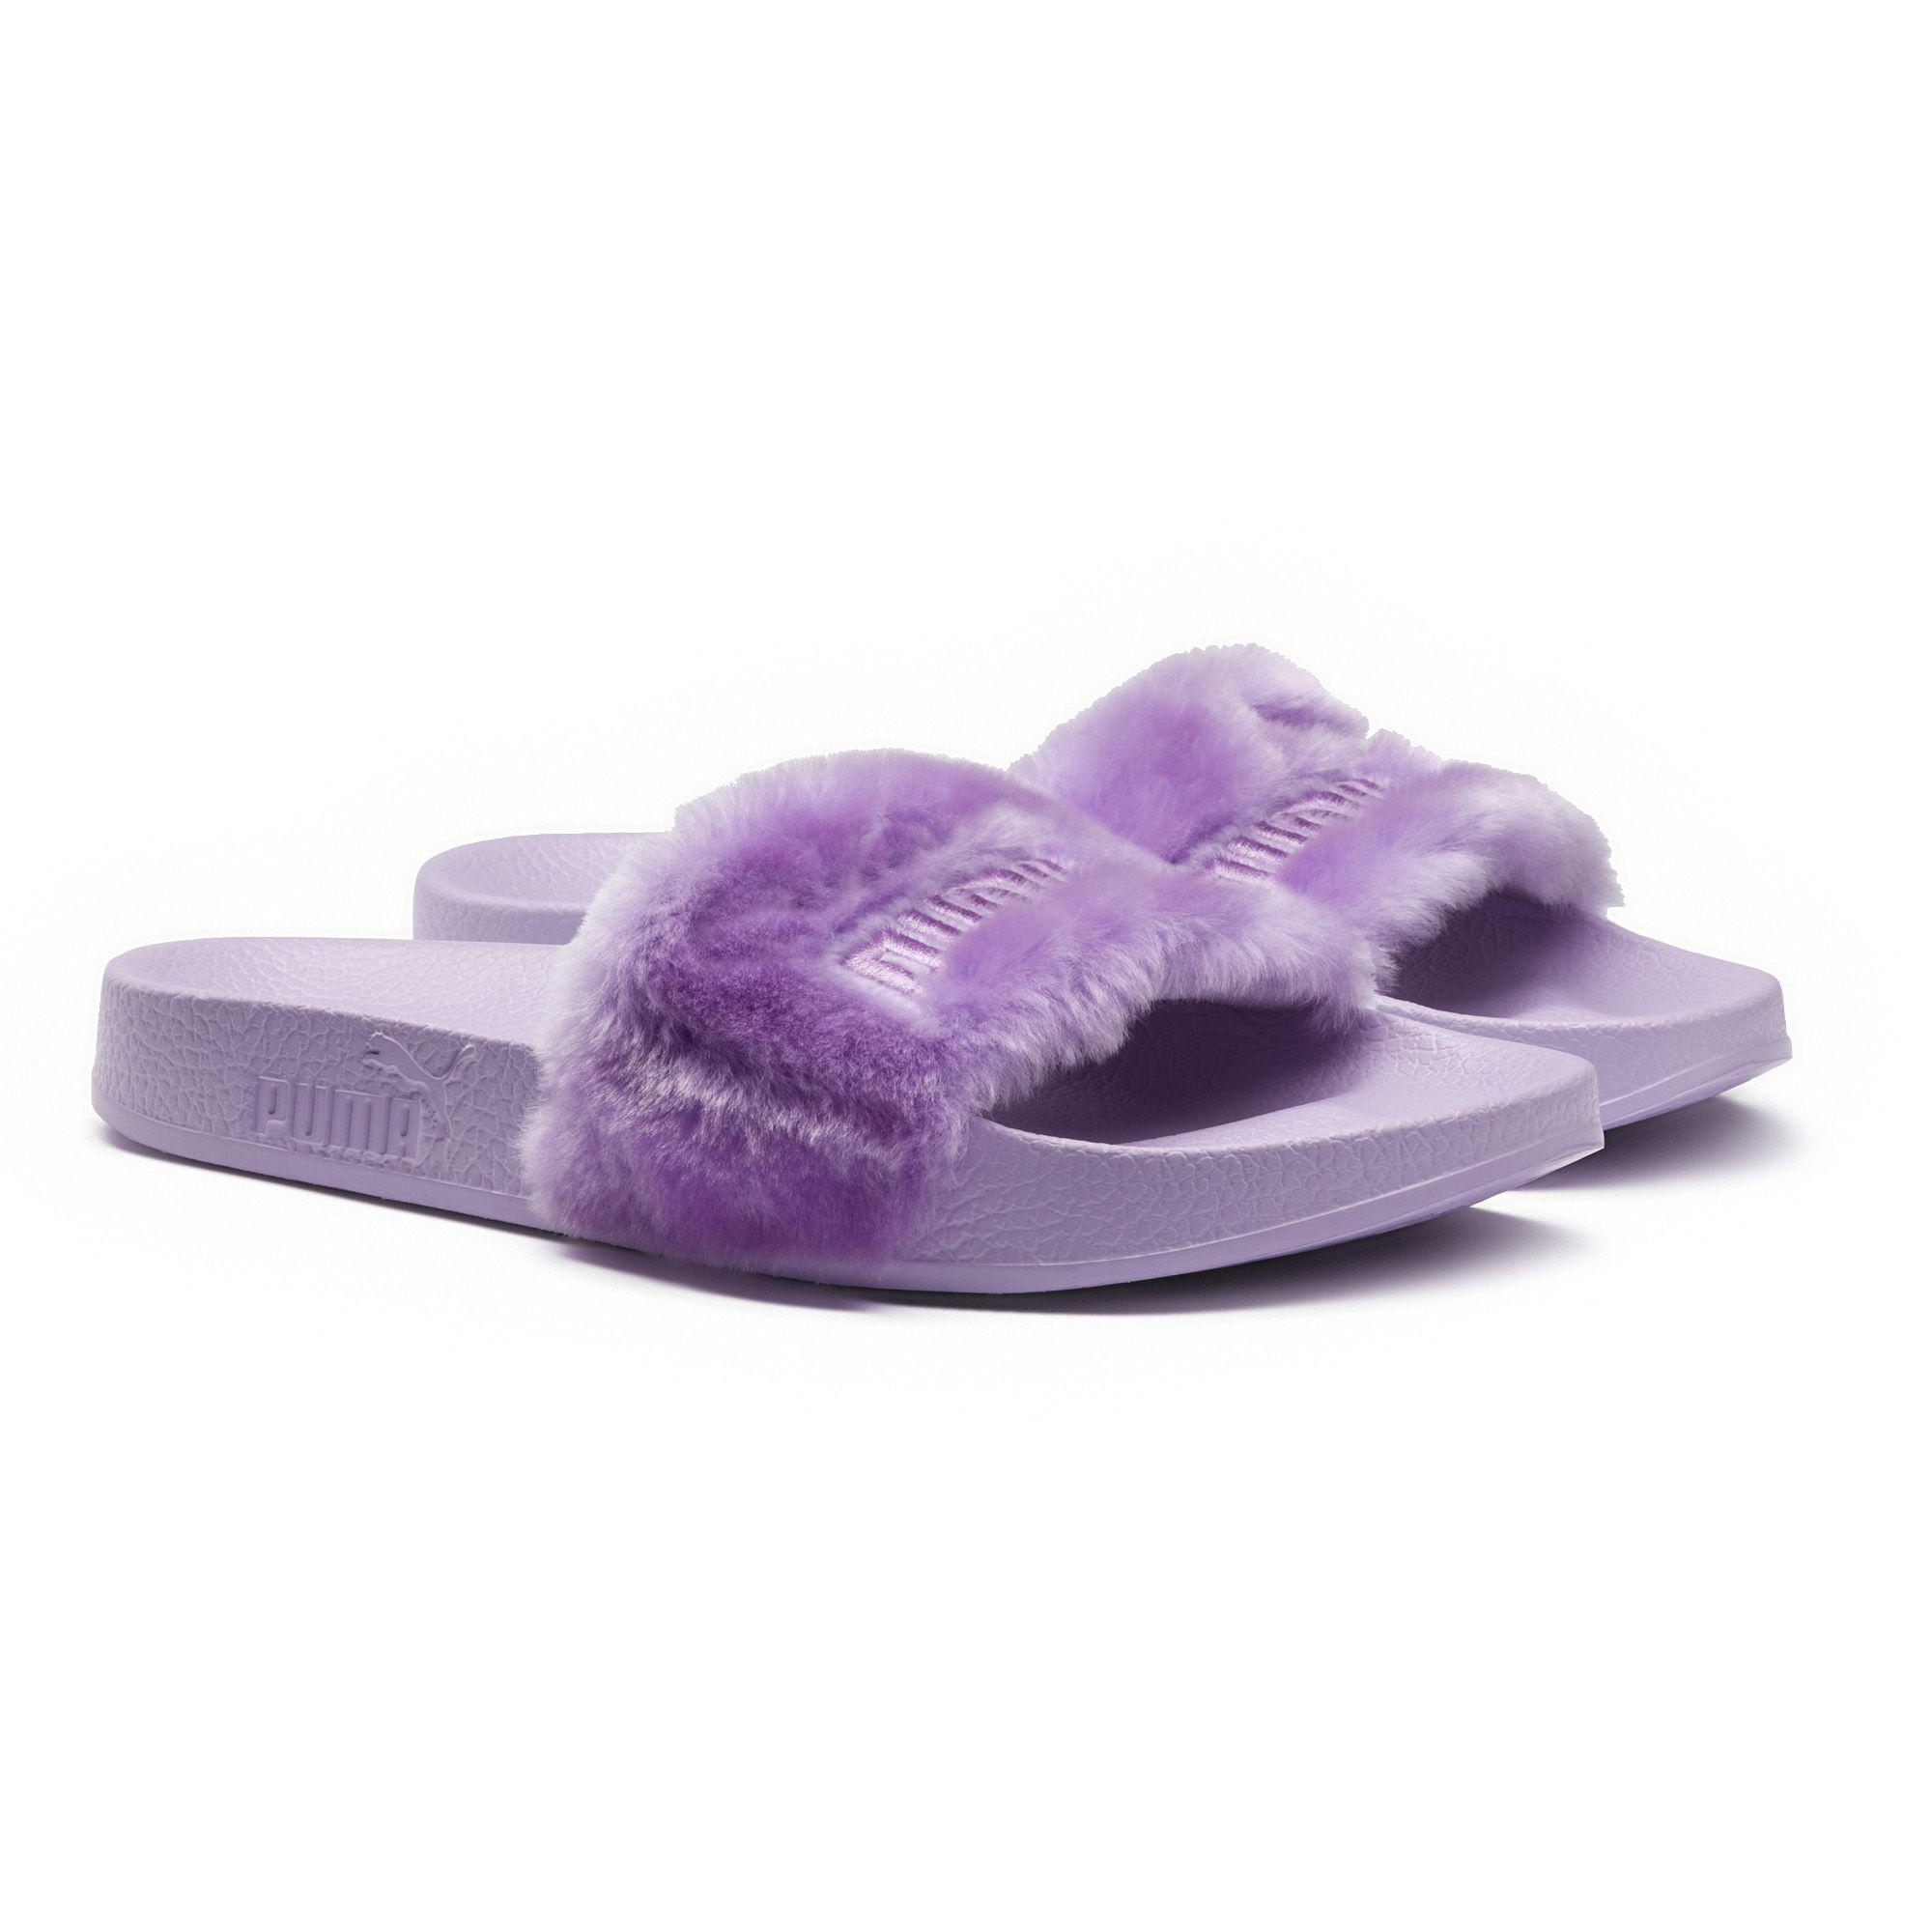 PUMA Fenty Fur Women's Slide Sandals in Purple | Lyst